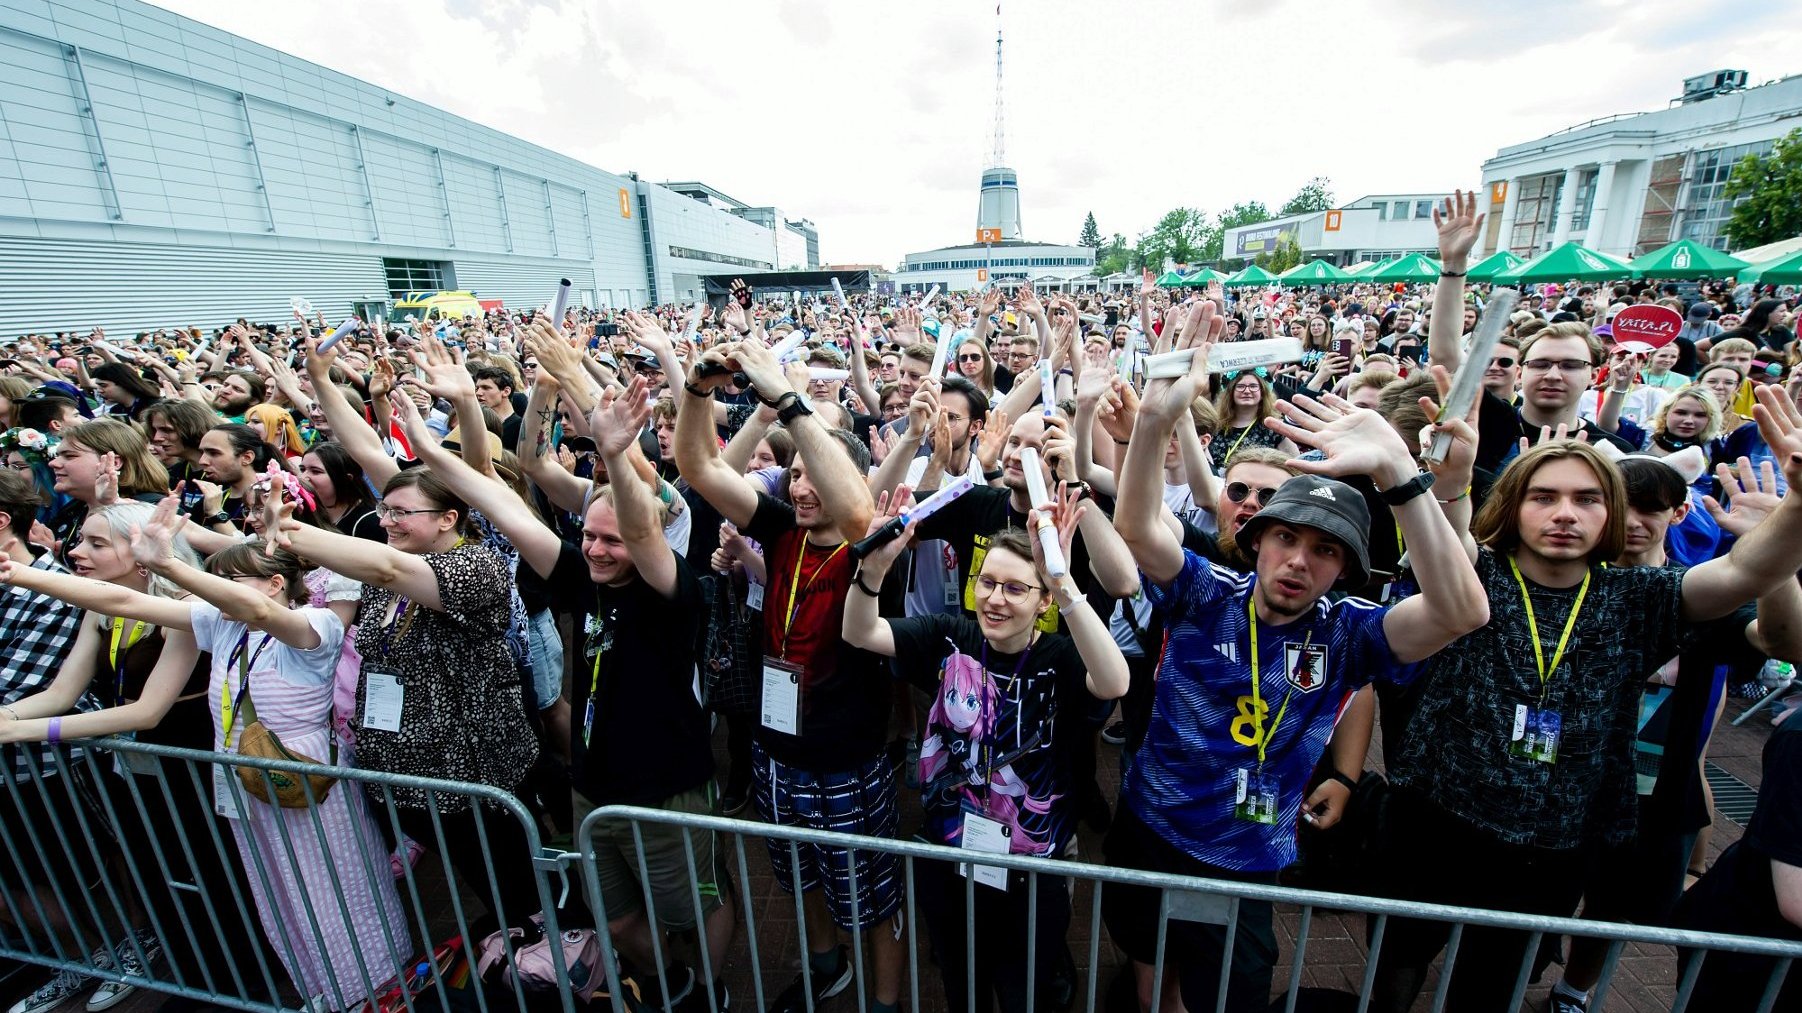 Widok ze sceny na tłum uczestników, którzy bawią się pod sceną koncertową. Uczestnicy mają podniesione ręce do góry, uśmiechają się, śpiewają, skaczą. W tle iglica Międzynarodowych Targów Poznańskich oraz inne pawilony.